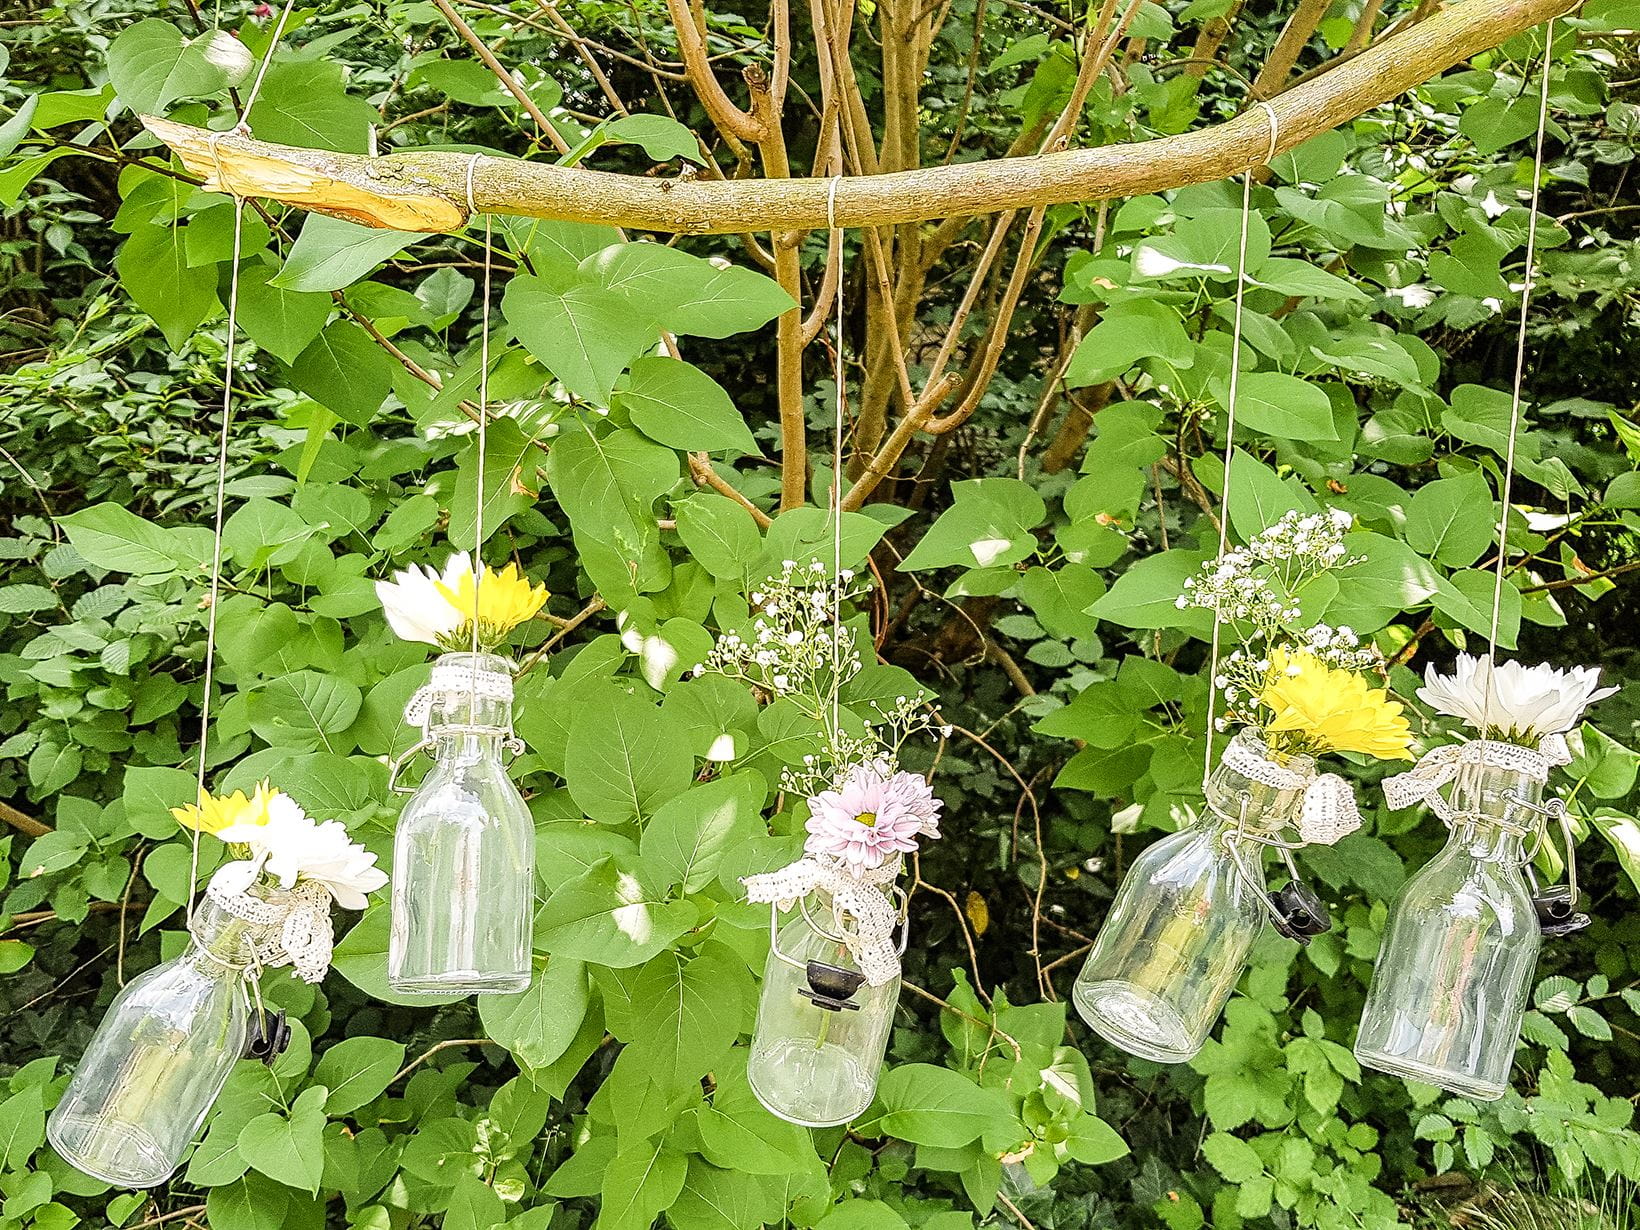 flower-vases-in-upcycled-bottles